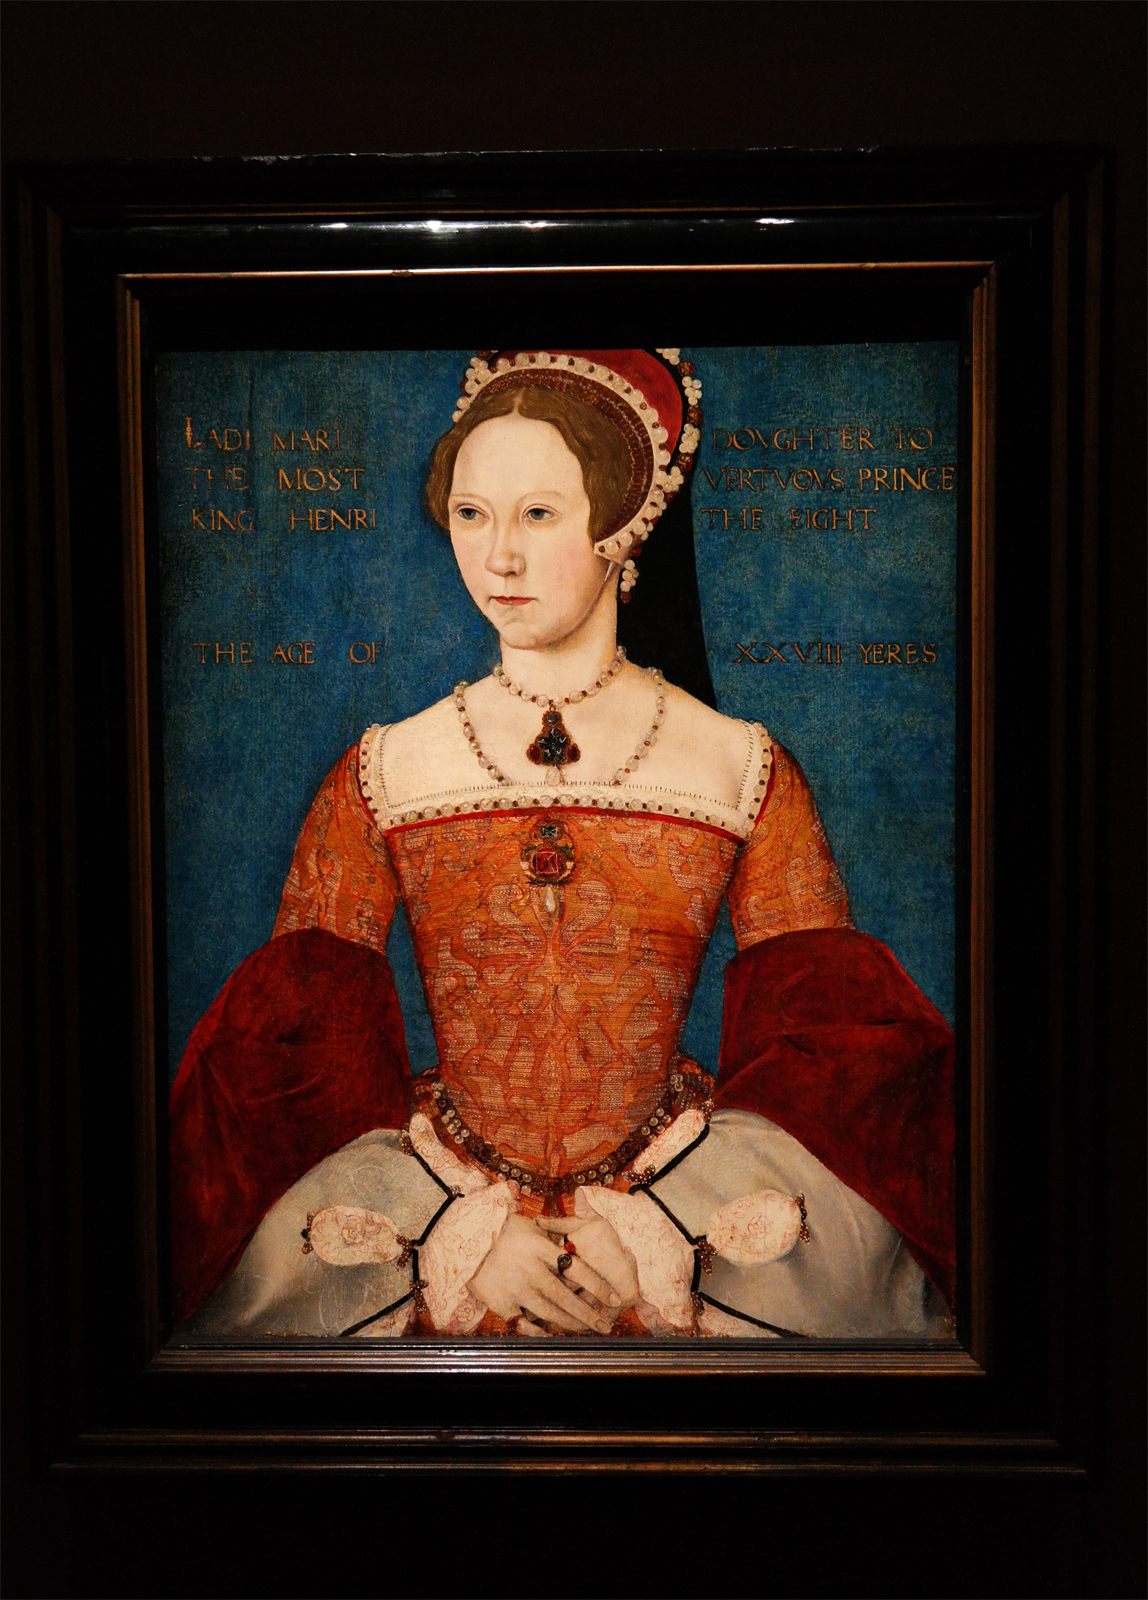 Marie 1ère, Maître dit "Master John" 1544 Londres, National Portrait Gallery